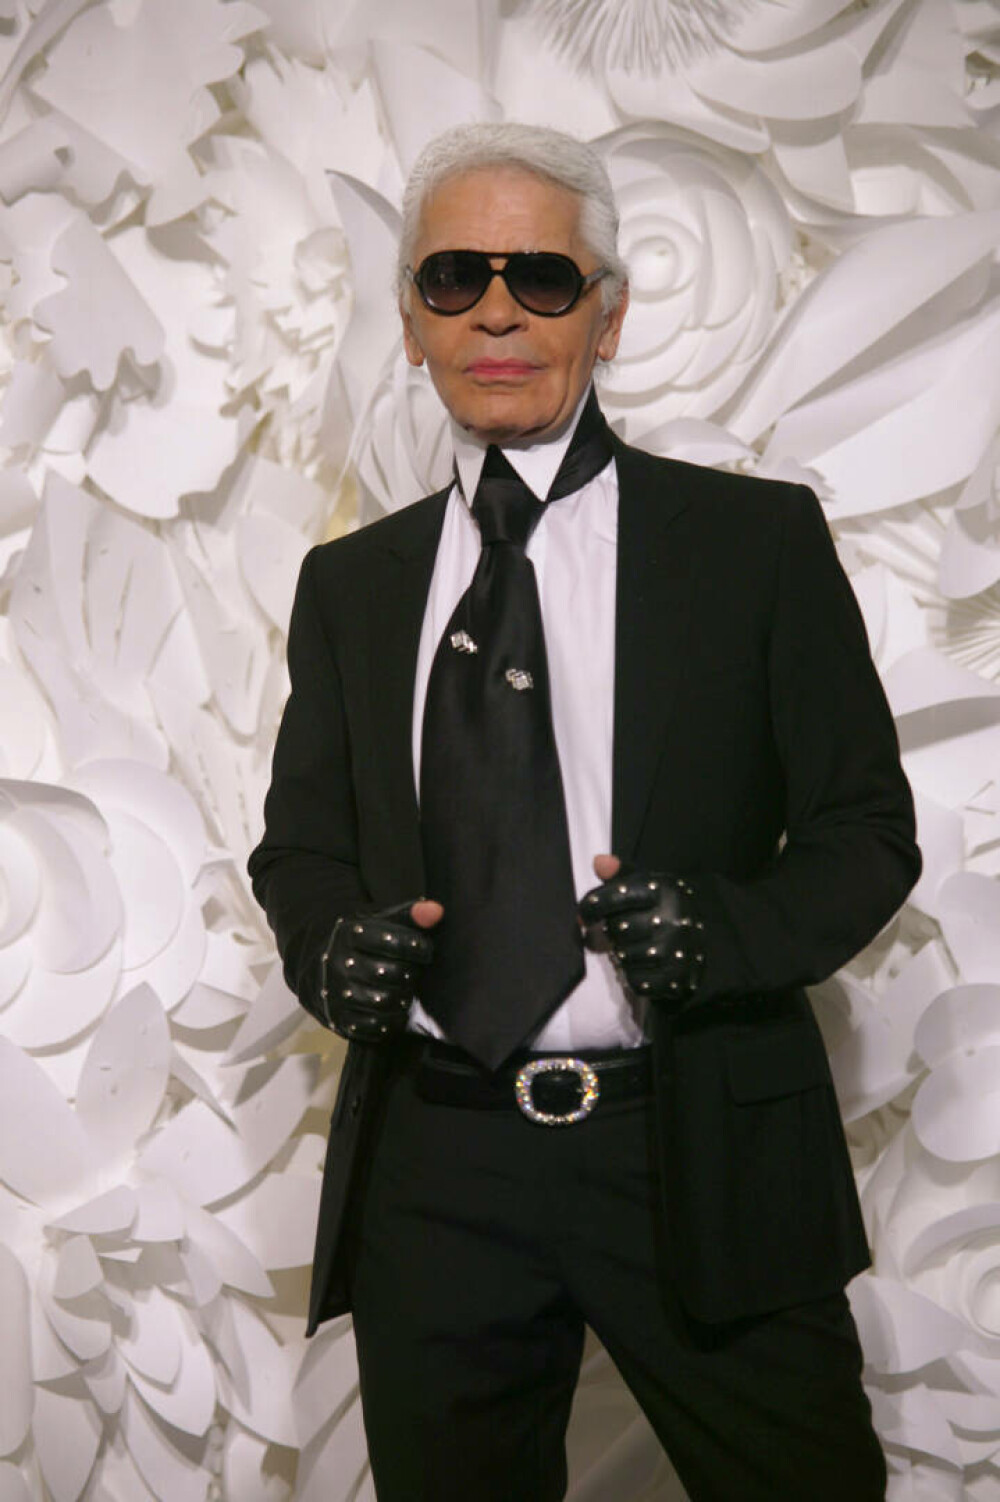 Imagini de colecție cu Karl Lagerfeld. Renumitul creator de modă ar fi împlinit 90 de ani | GALERIE FOTO - Imaginea 22